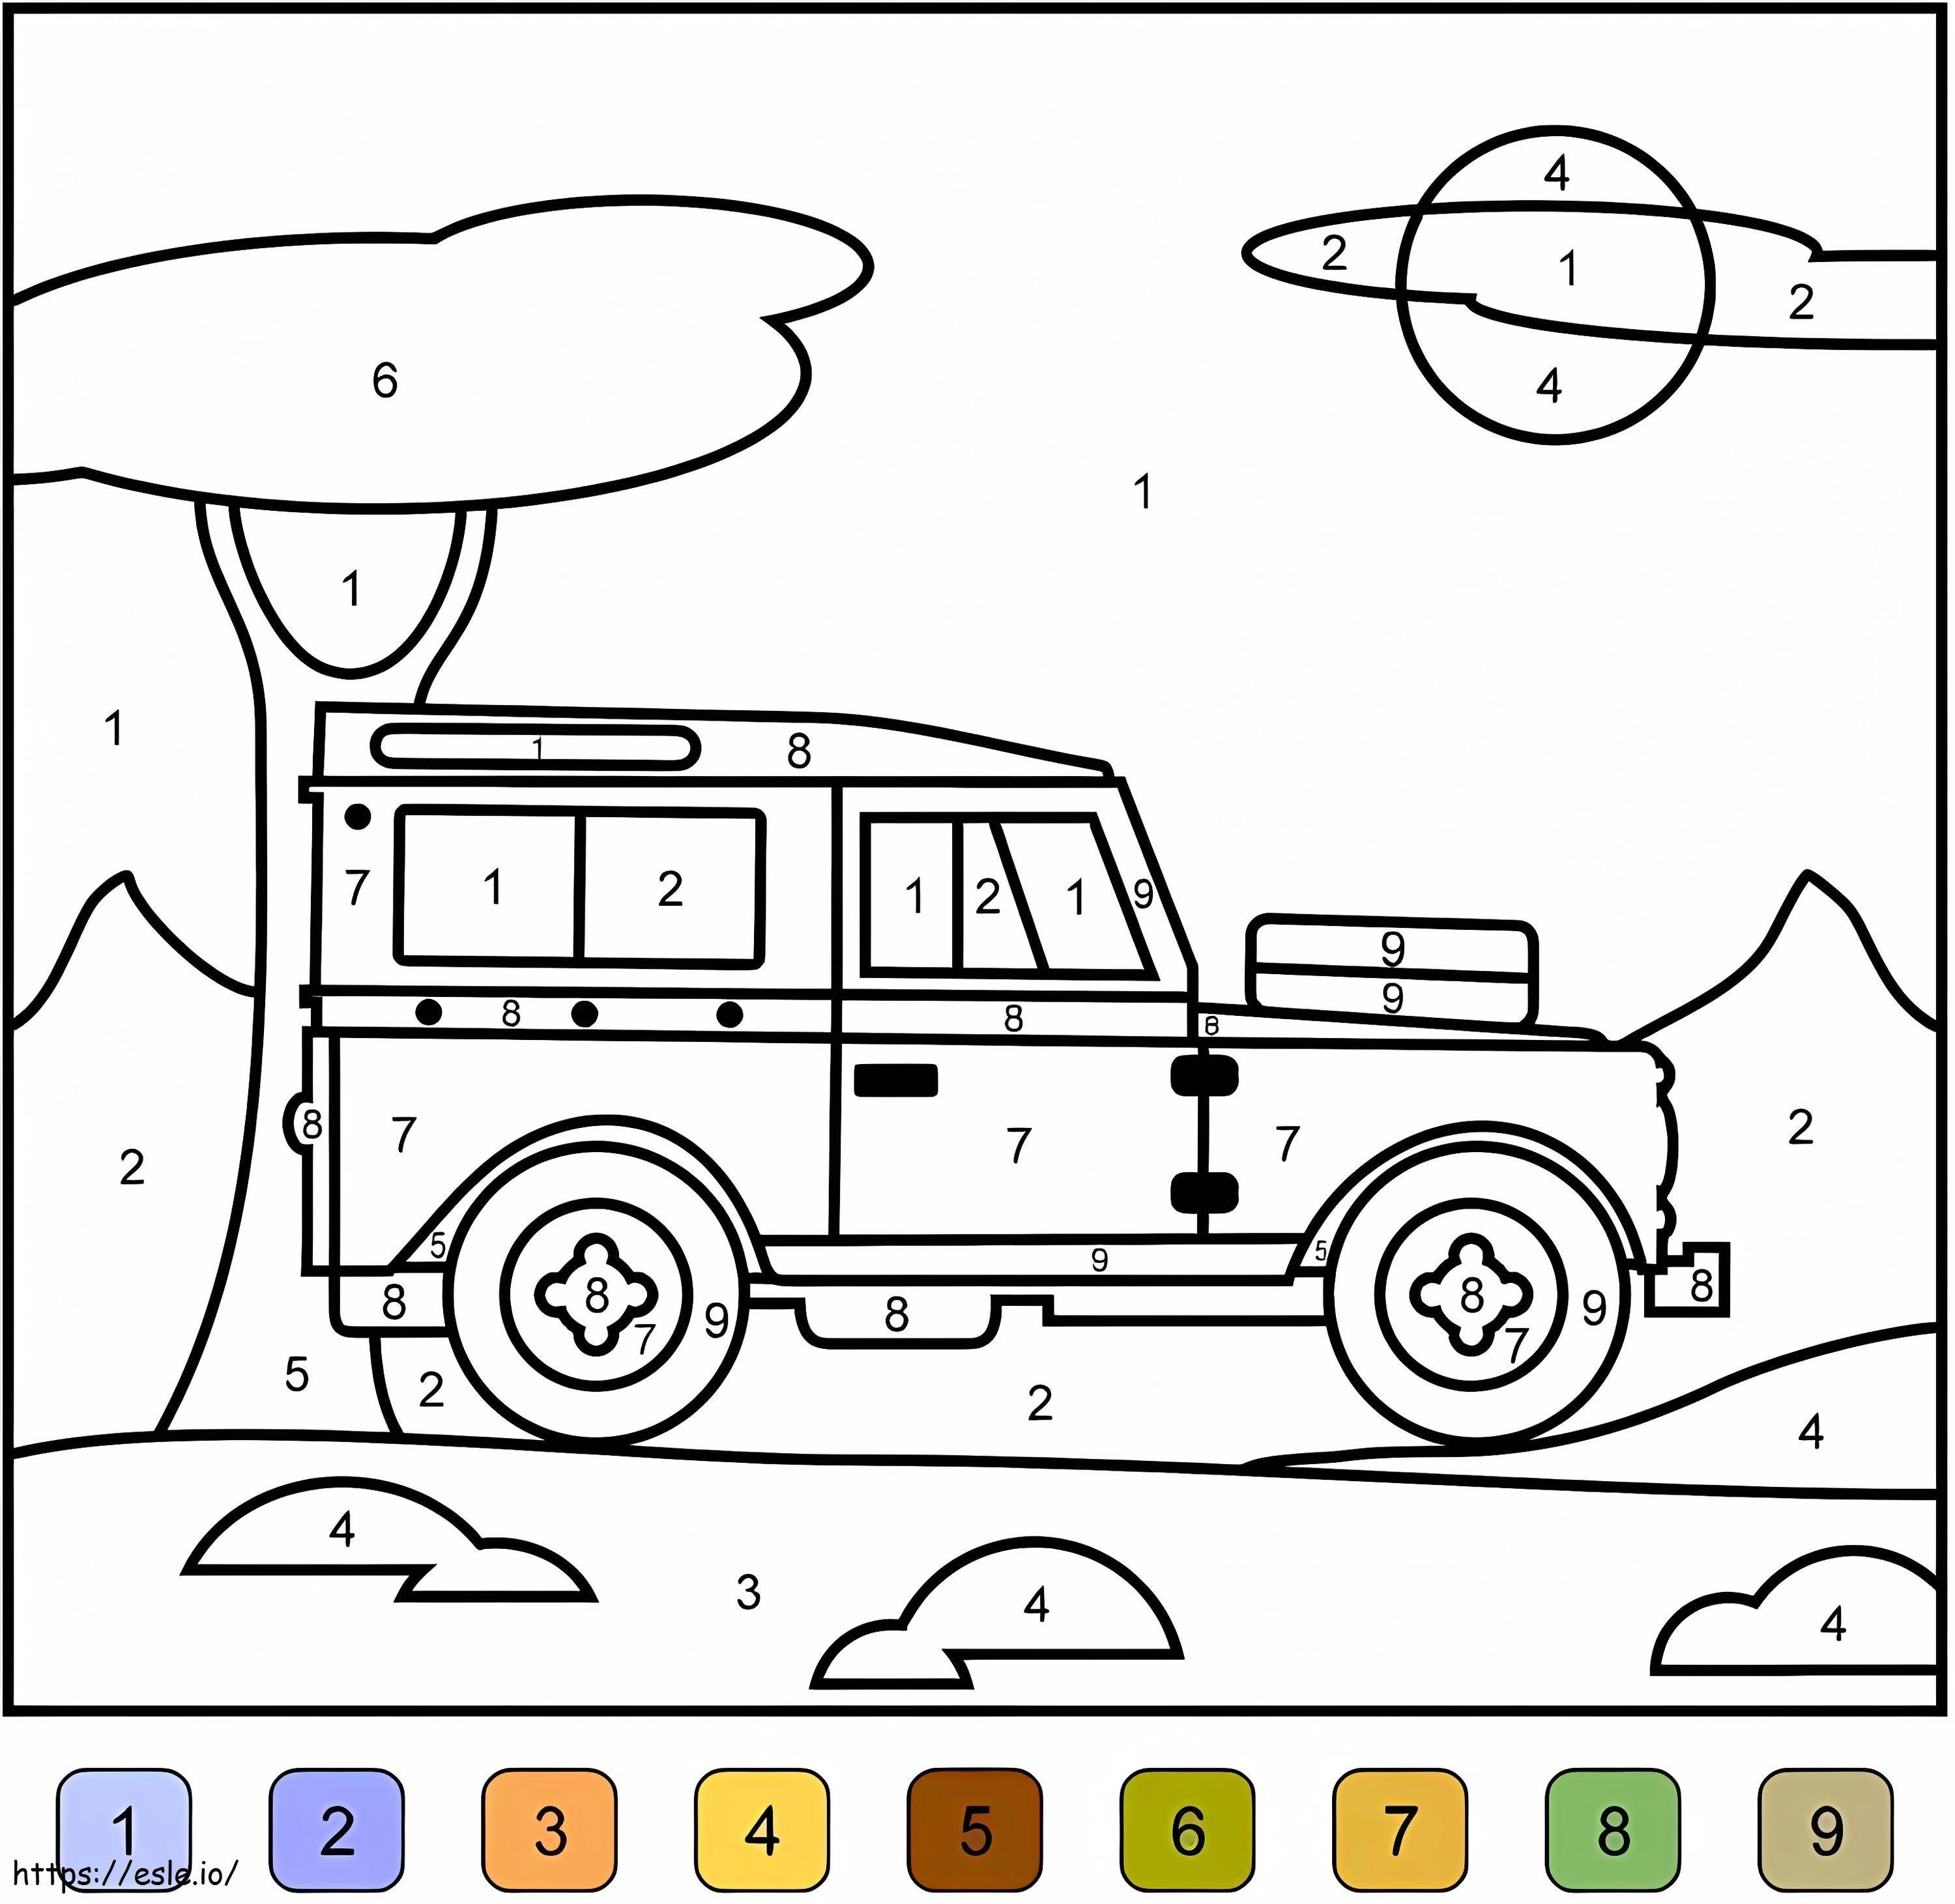 Culoare Jeep după număr de colorat